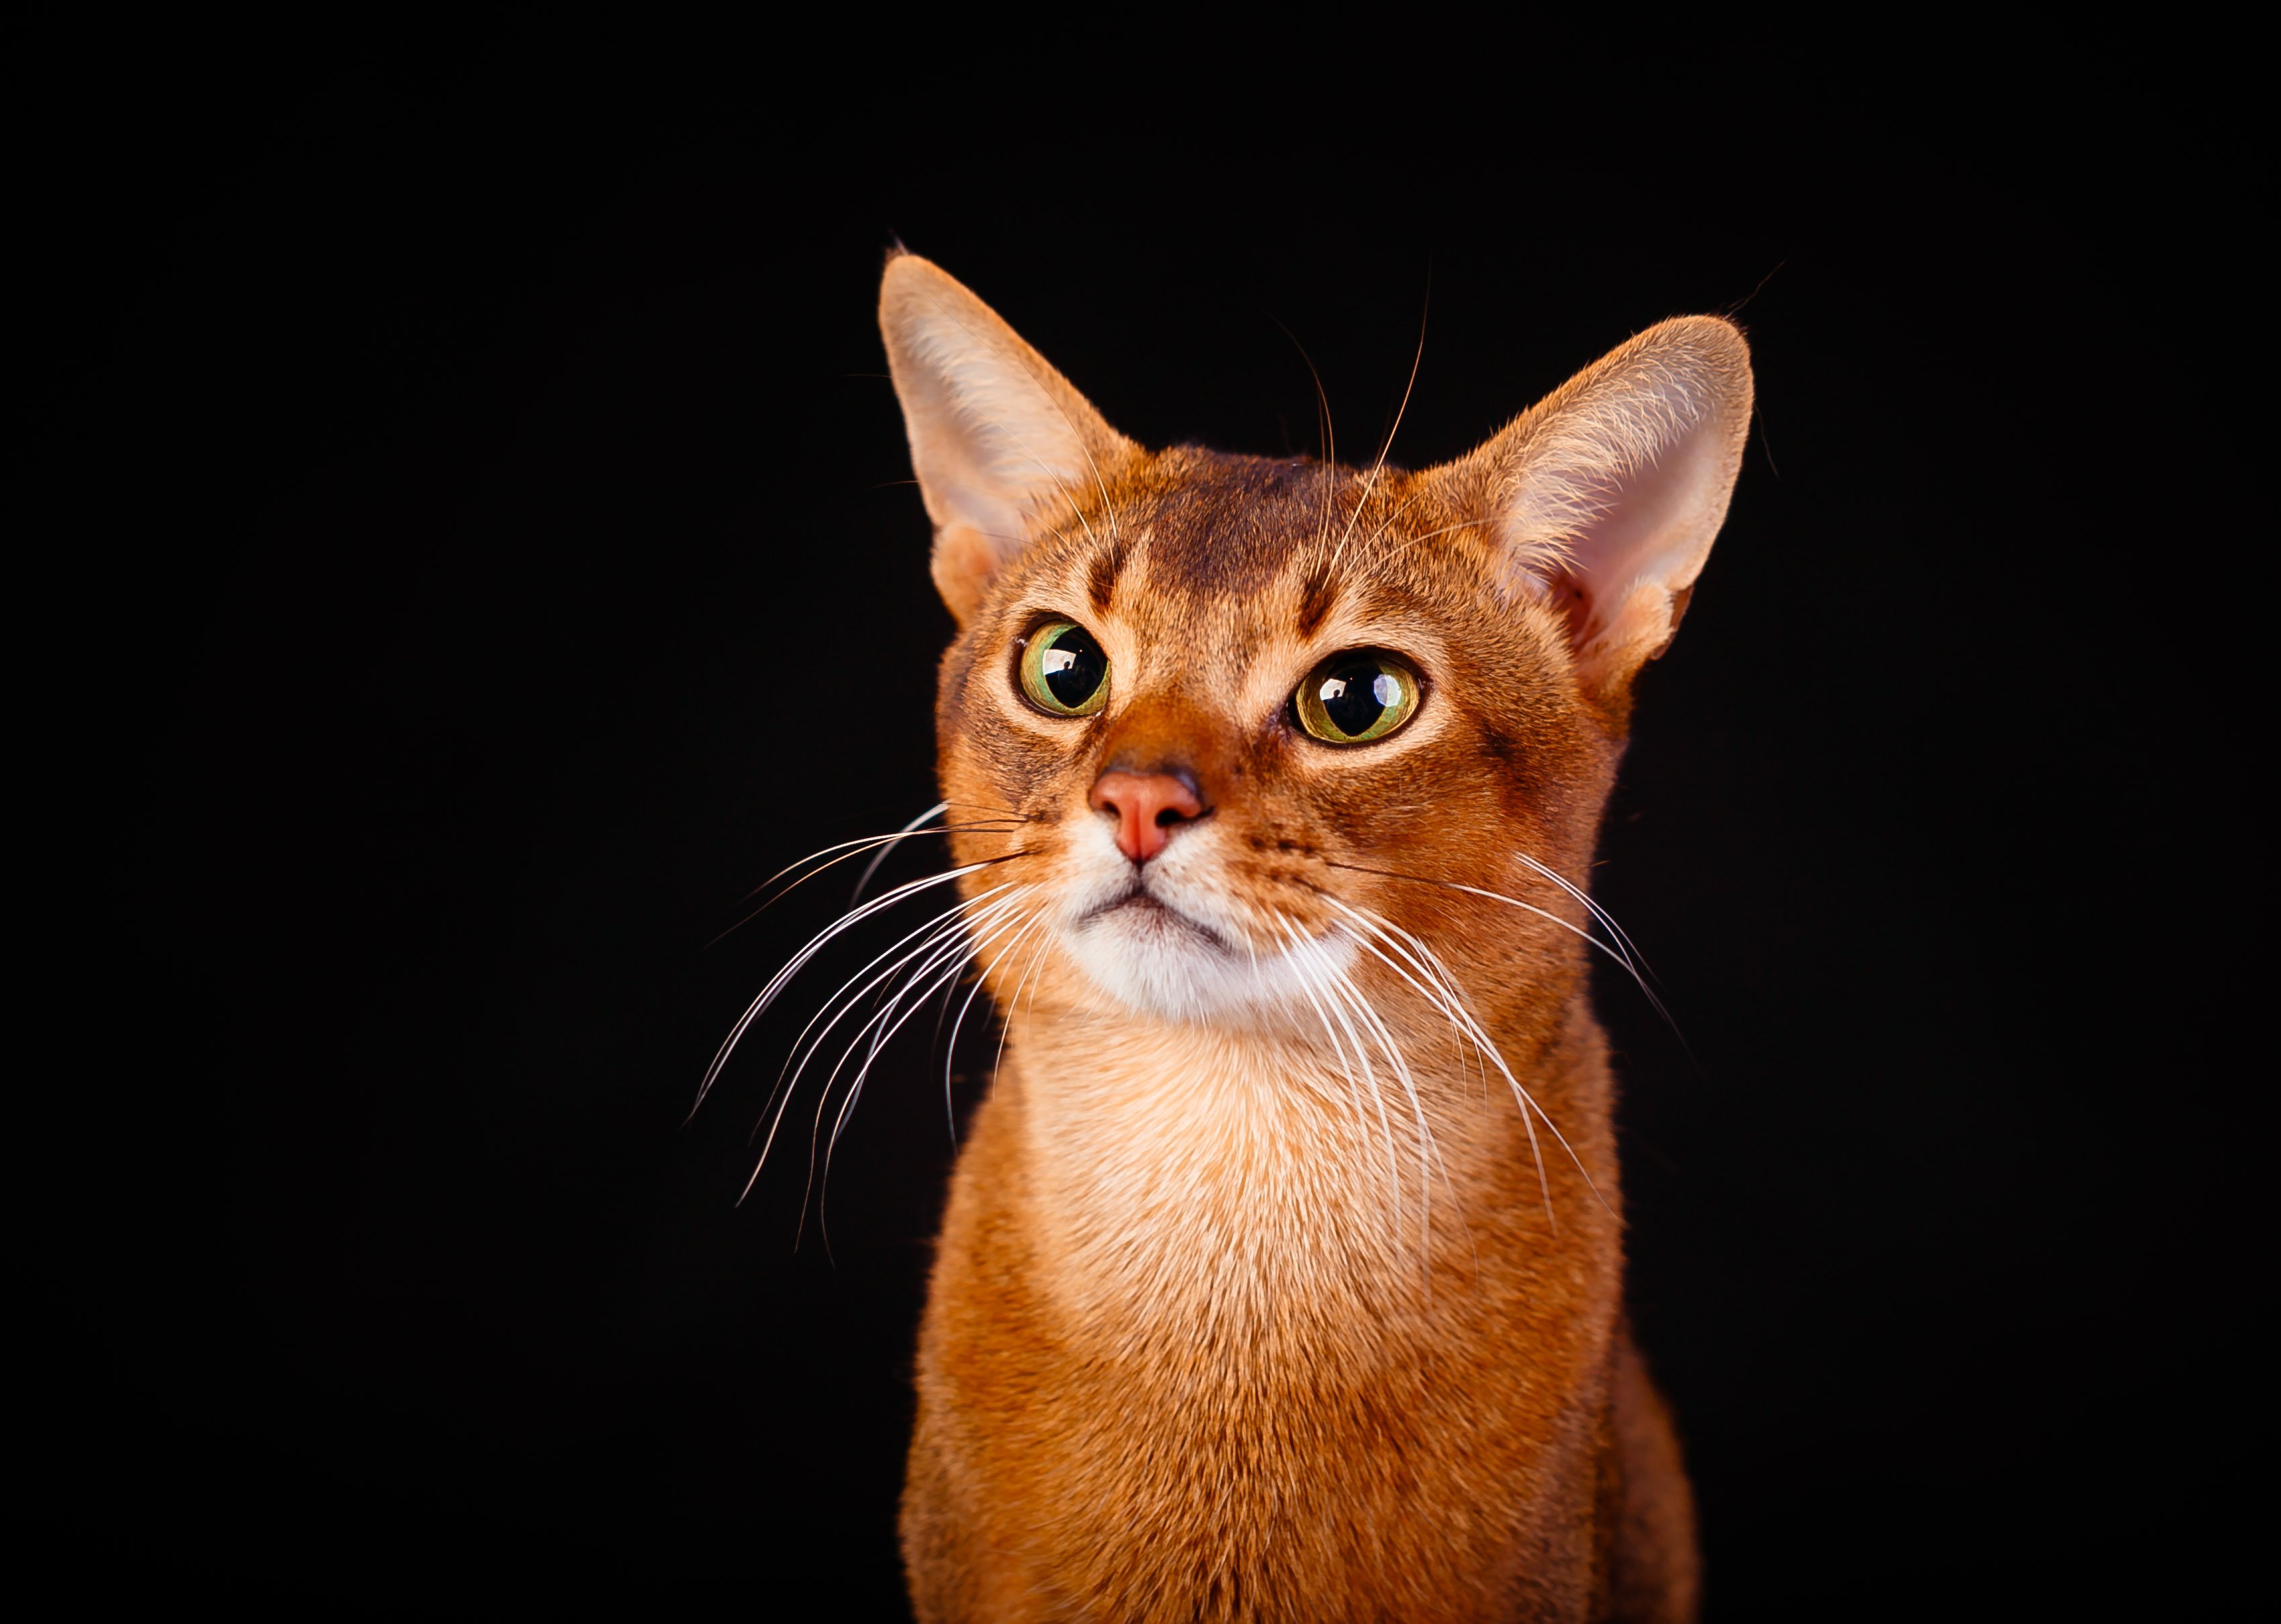 Абиссинская кошка: особенности породы, фото и характер абиссина, выбор котёнка абиссинца, уход и содержание питомца, корм для кота